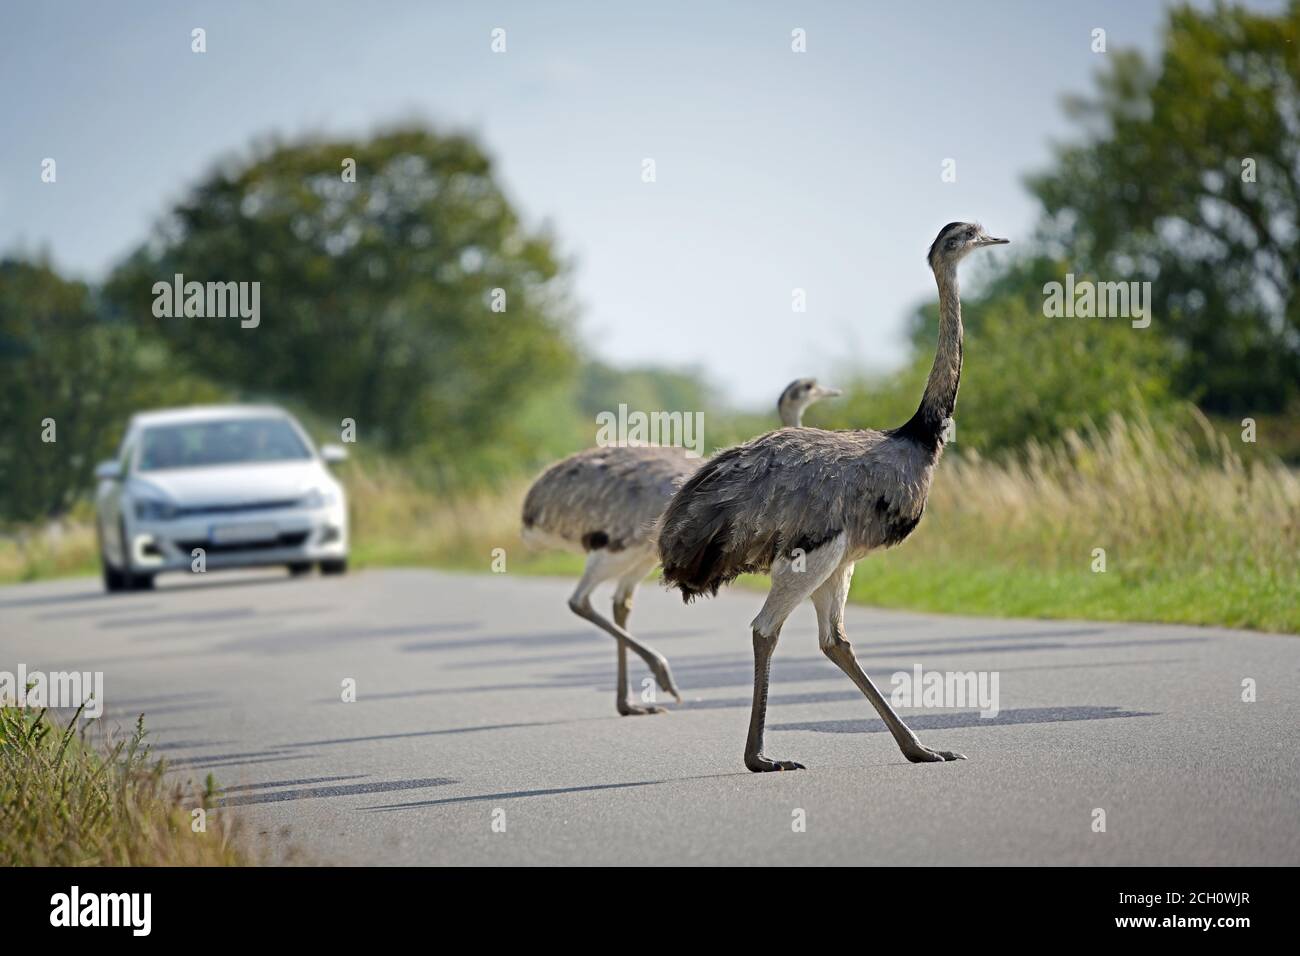 Dos nandus o mayor rhea (Rhea americana) cruzar la carretera frente a un coche que se aproxima en Mecklemburgo Pomerania Occidental, Alemania, las grandes aves pueden ser Foto de stock